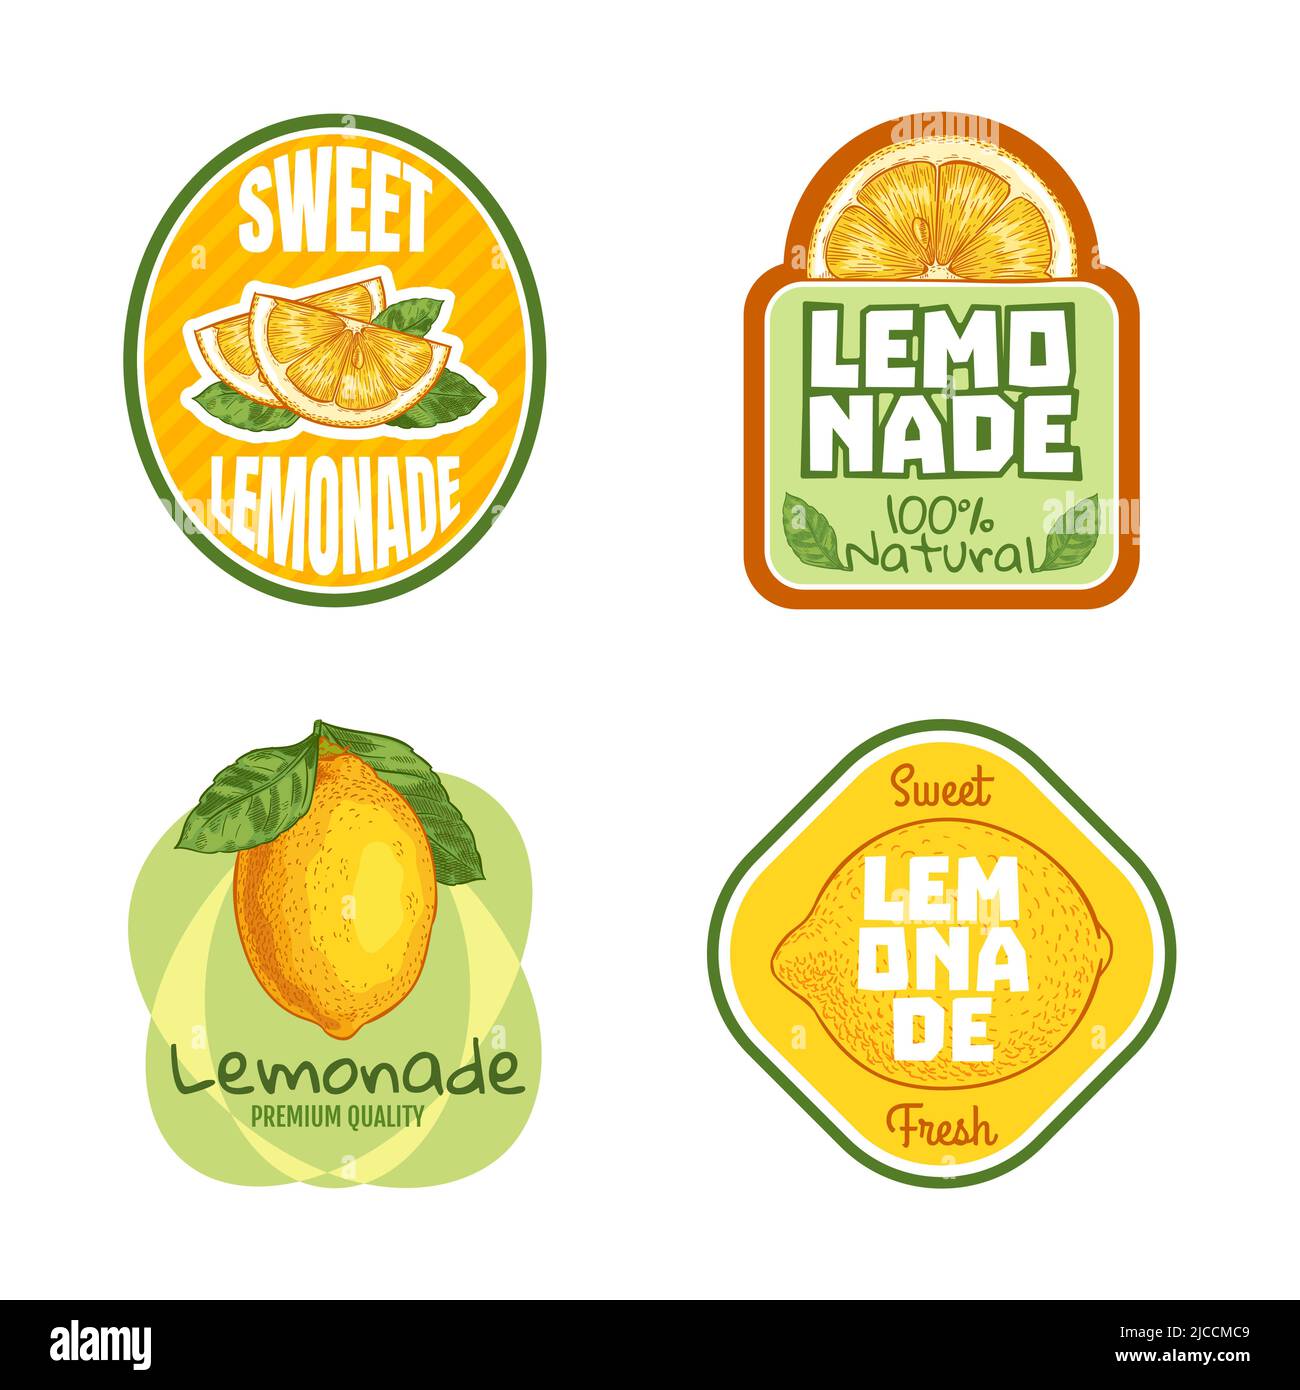 Limonadenetikett. Naturgetränk-Abzeichen mit Zitrussaft. Frisches Bio-Produkt mit gelben Zitronenfrüchten. Köstliches Getränk im Sommer Stock Vektor